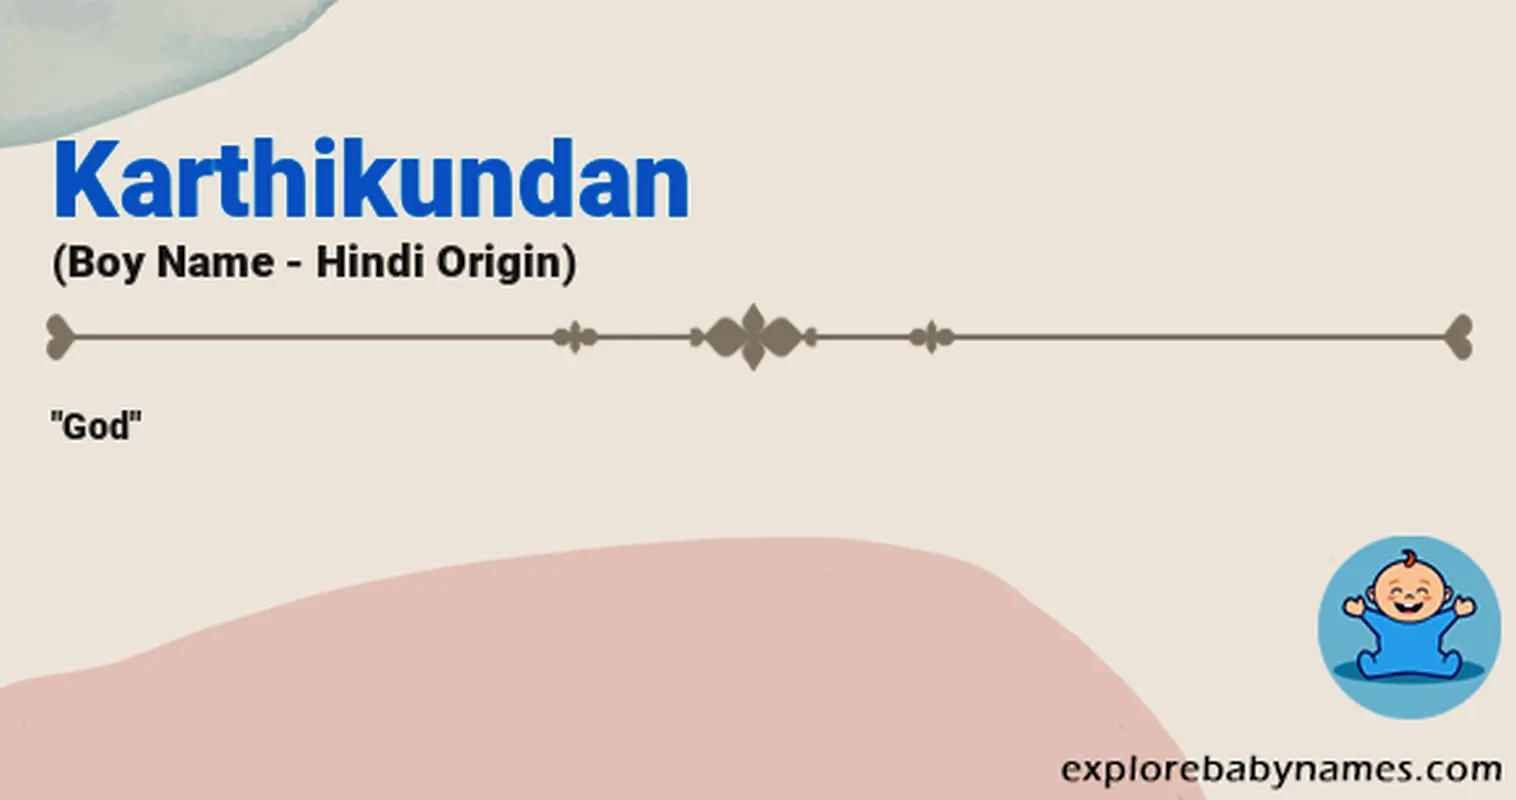 Meaning of Karthikundan